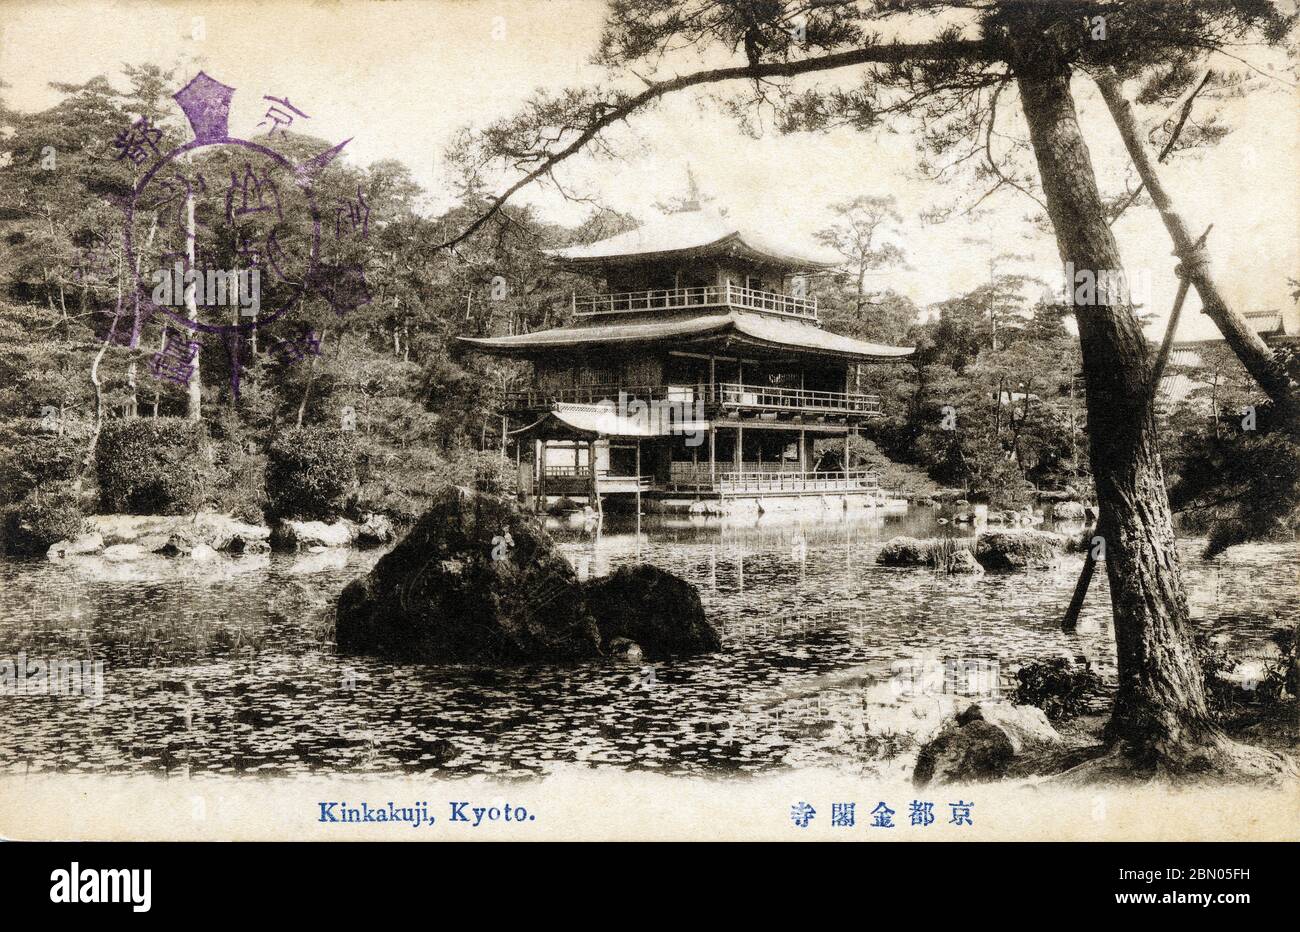 [ 1910s Japon - Pavillon d'or, Kyoto ] — le temple bouddhiste Zen Kinkaku-ji (金閣寺, Temple du Pavillon d'or) à Kyoto, entre 1907 (Meiji 40) et 1918 (Taisho 7). Kinkaku-ji a été construit en 1397 comme villa de retraite pour Shogun Ashikaga Yoshimitsu. Son fils, le shogun Ashikaga Yoshimochi, l'a converti en temple Zen de l'école Rinzai. carte postale vintage du xxe siècle. Banque D'Images